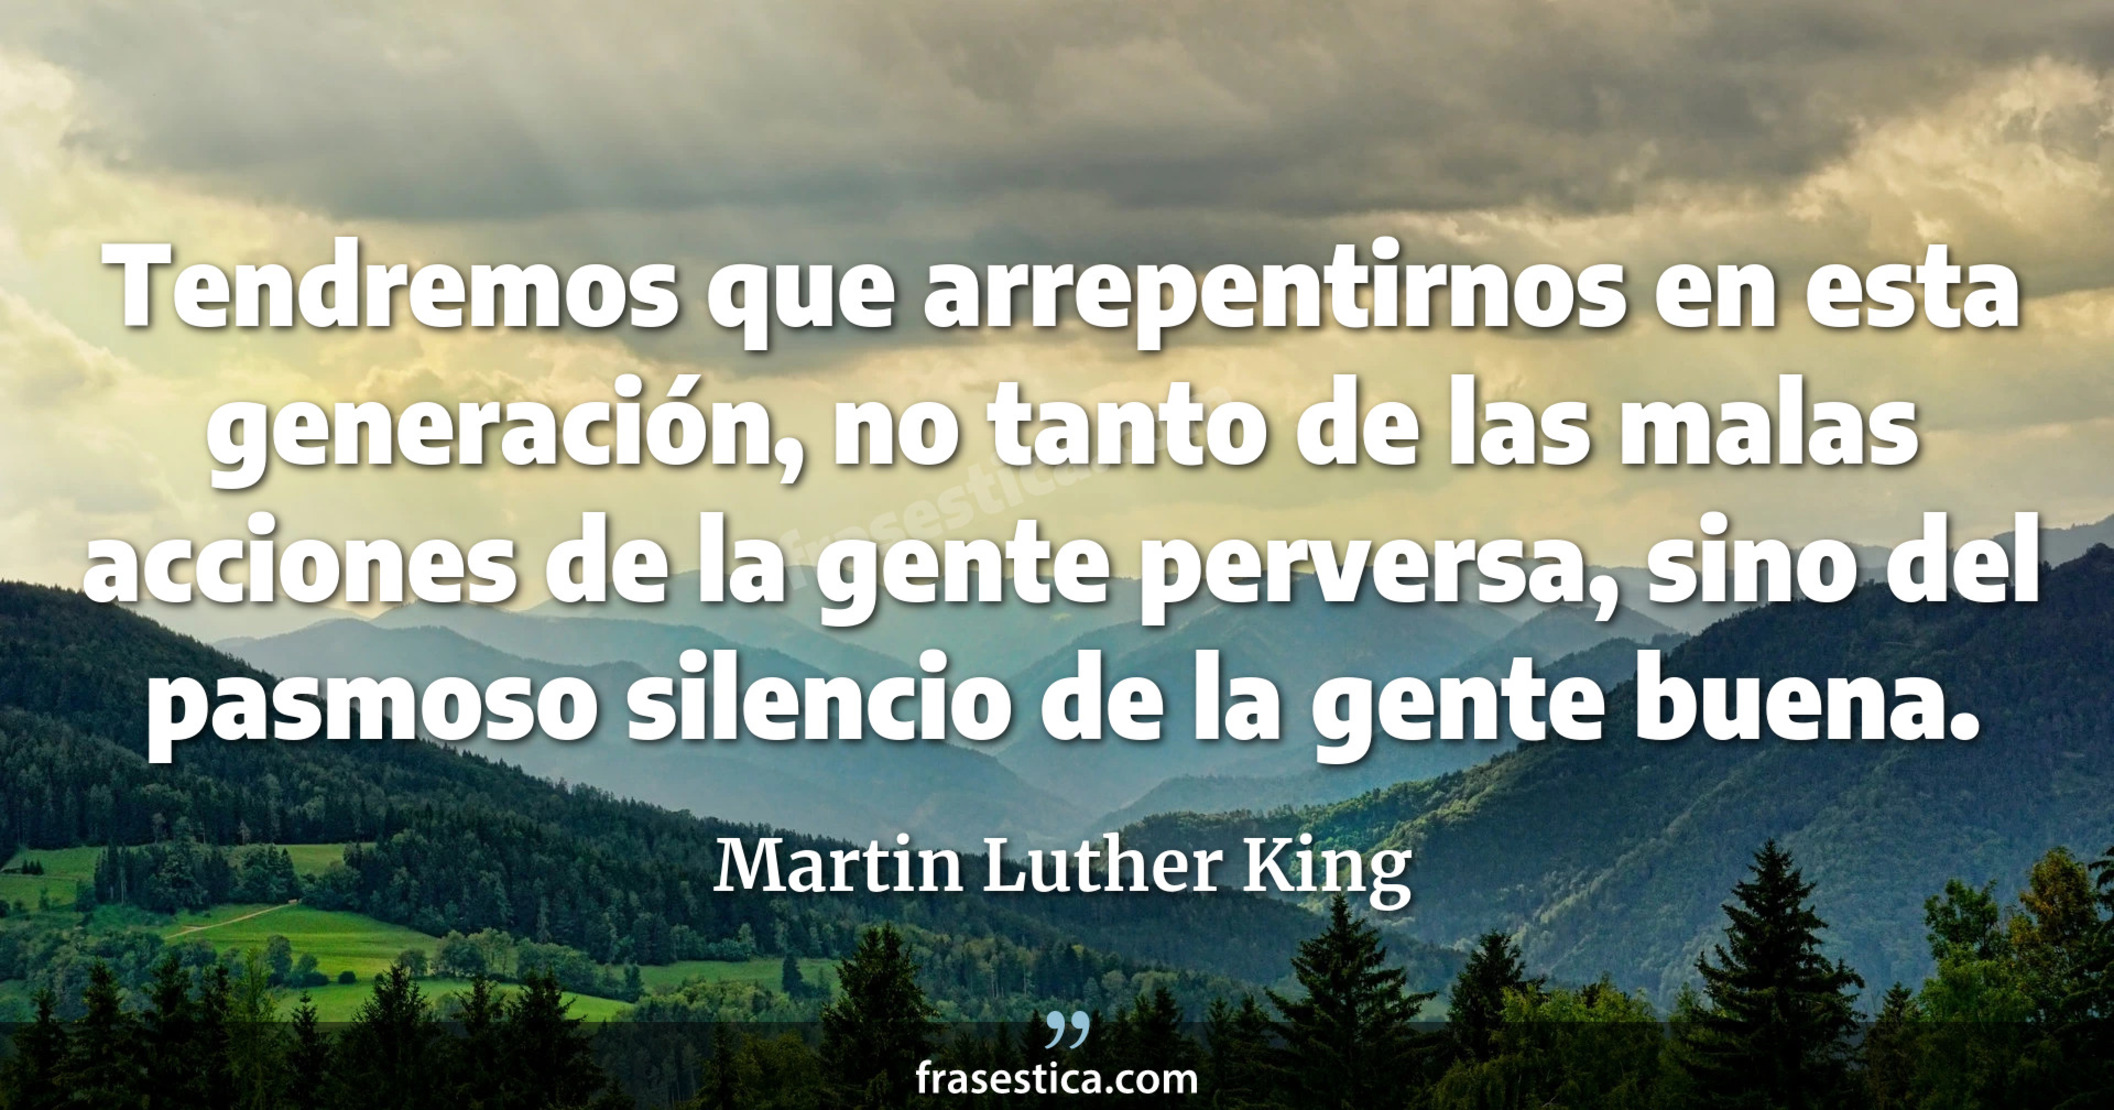 Tendremos que arrepentirnos en esta generación, no tanto de las malas acciones de la gente perversa, sino del pasmoso silencio de la gente buena. - Martin Luther King